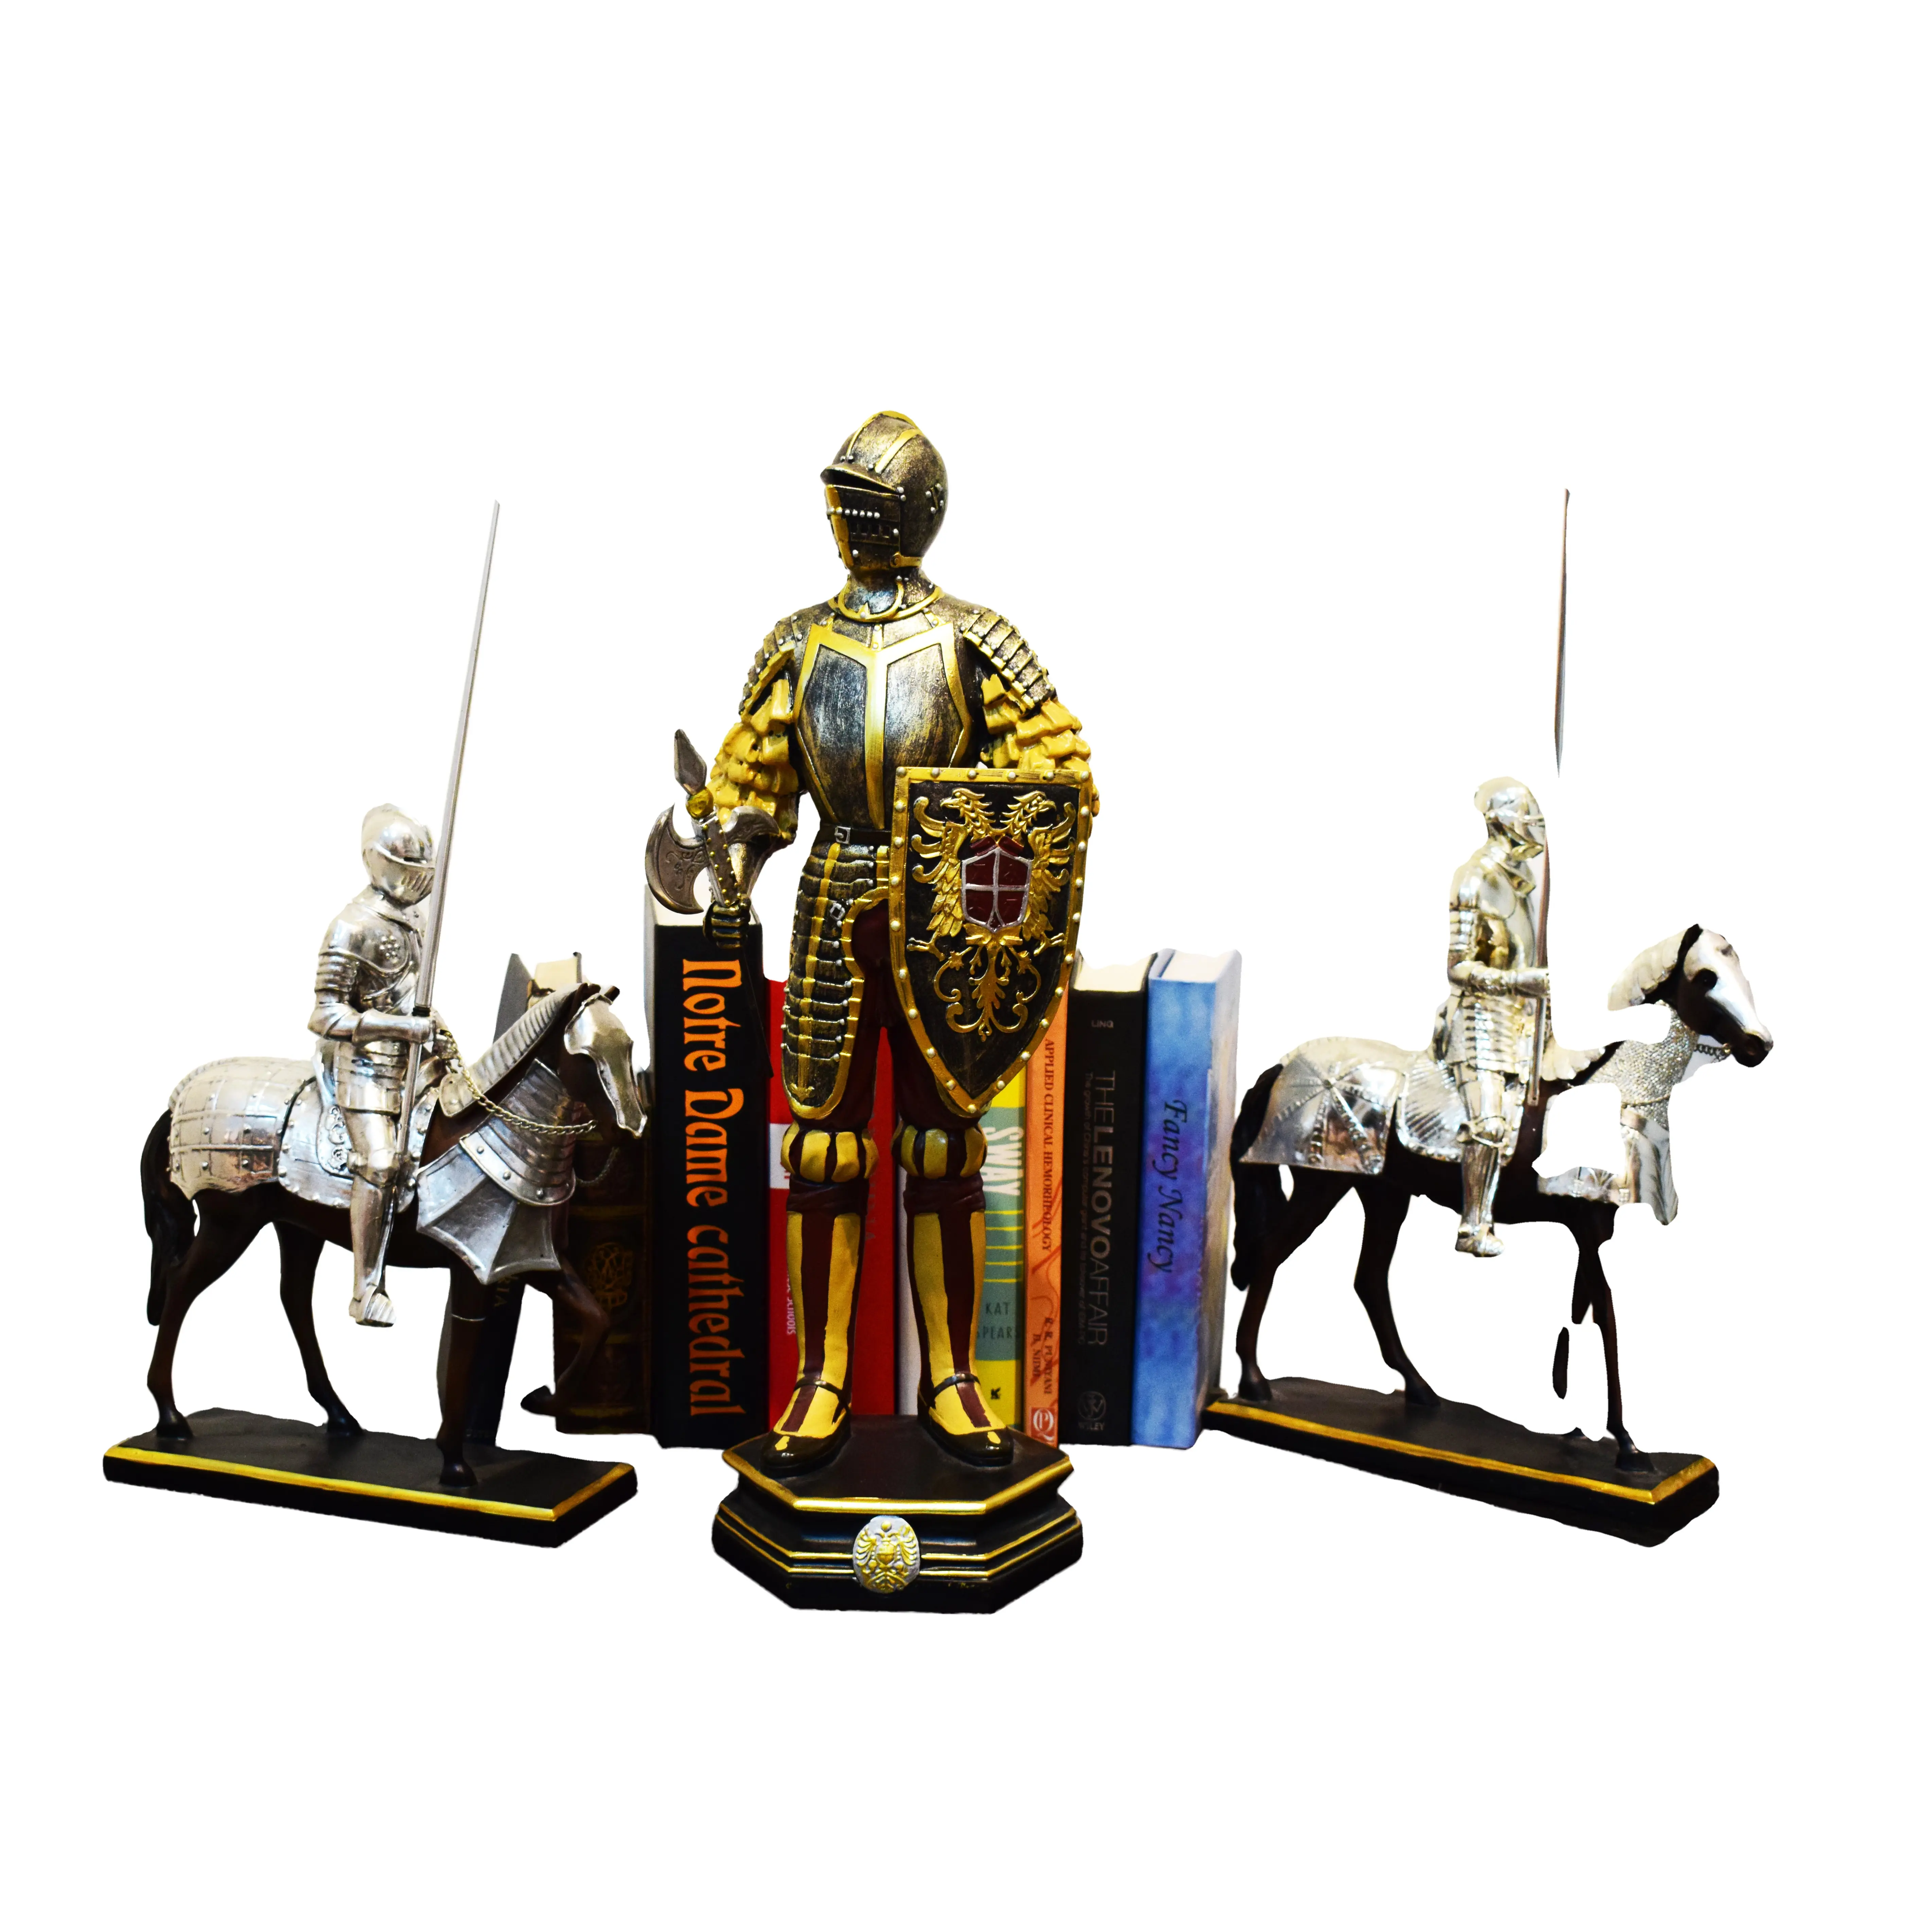 Guerrier cheval résine artisanat sculpture double soldat ensembles ornements militaire cadeau pour les amis